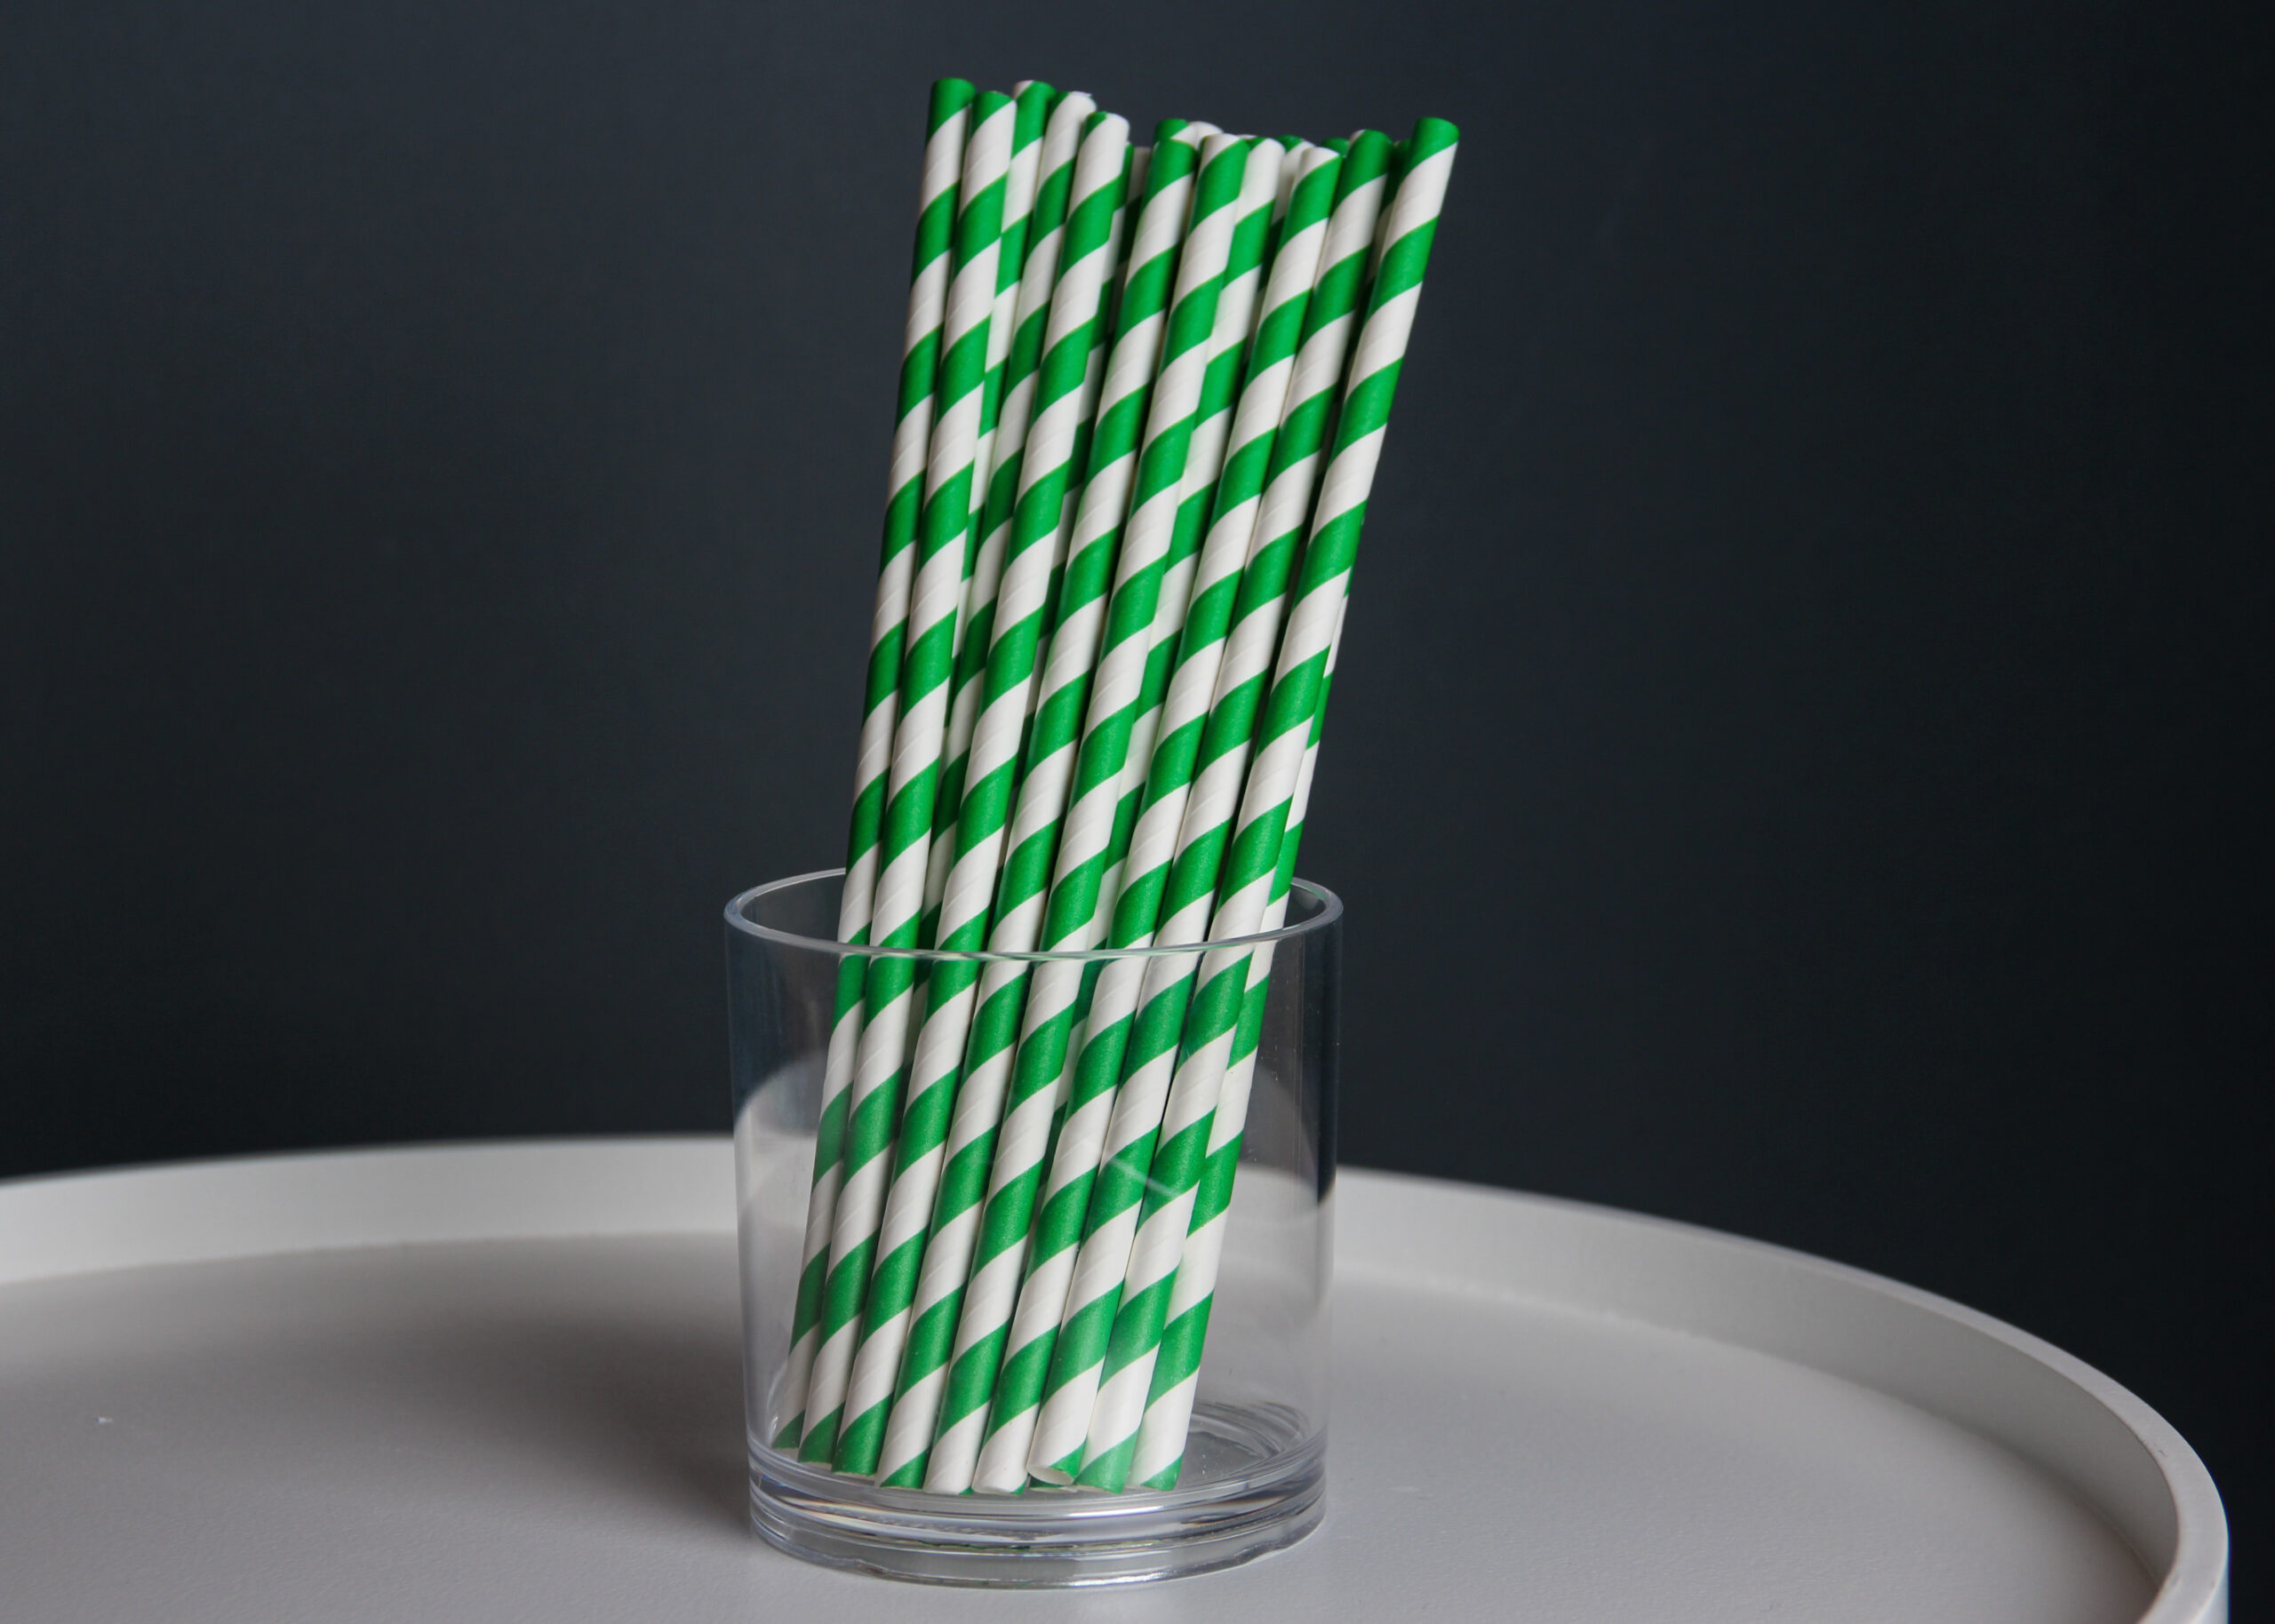 Трубочка бумажная витая бело-зеленая, 20 см, 5 мм, 25 шт.